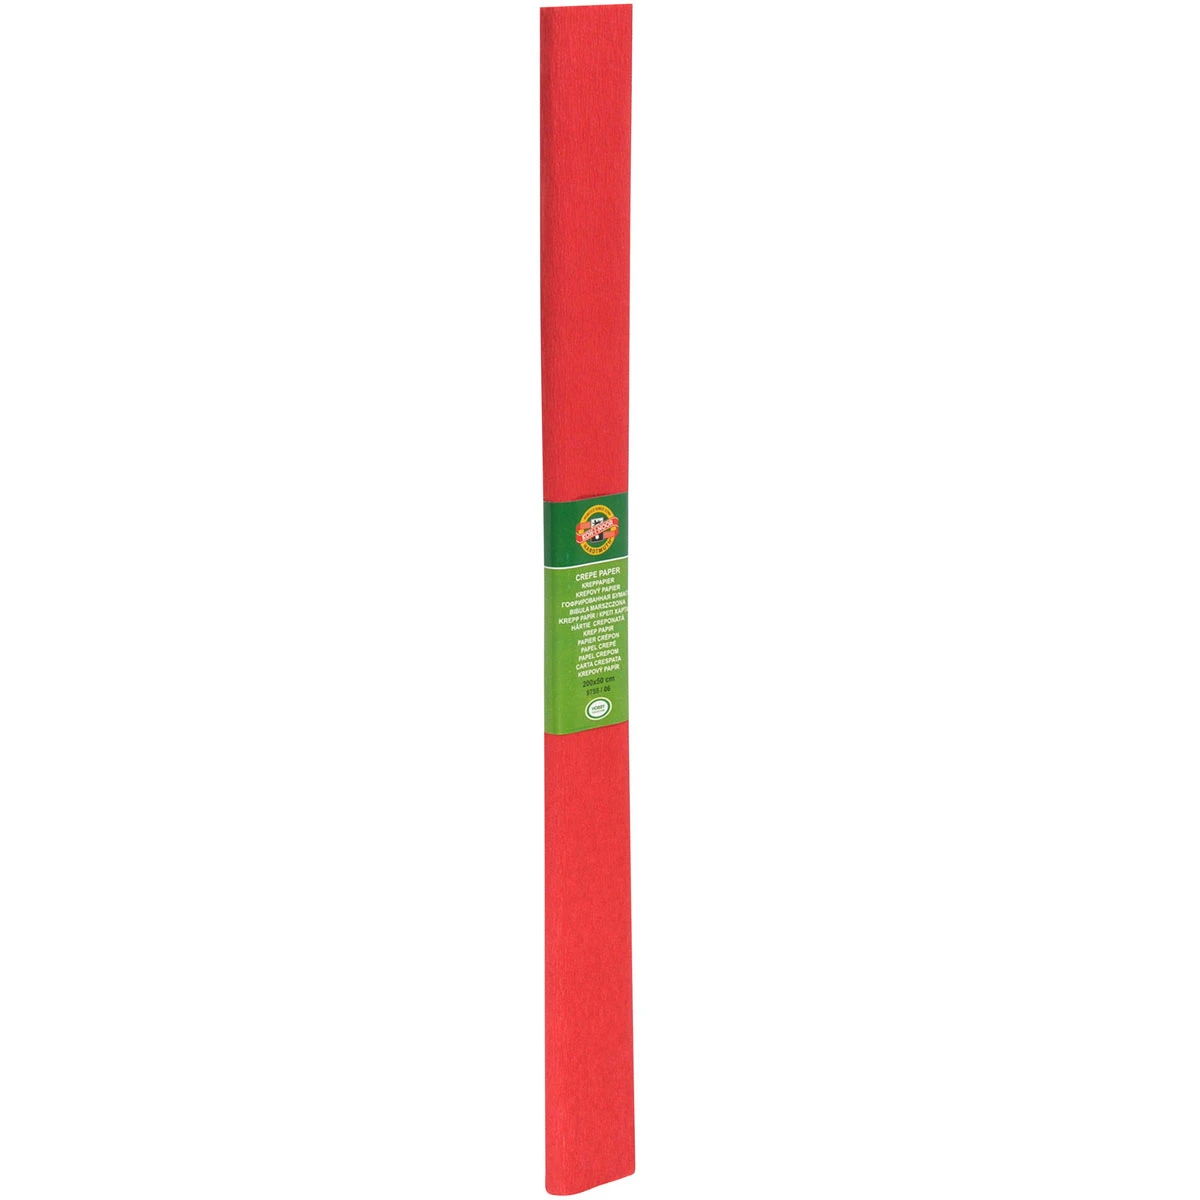 Креп-бумага Koh-I-Noor, светло-красная, 2000х500 мм